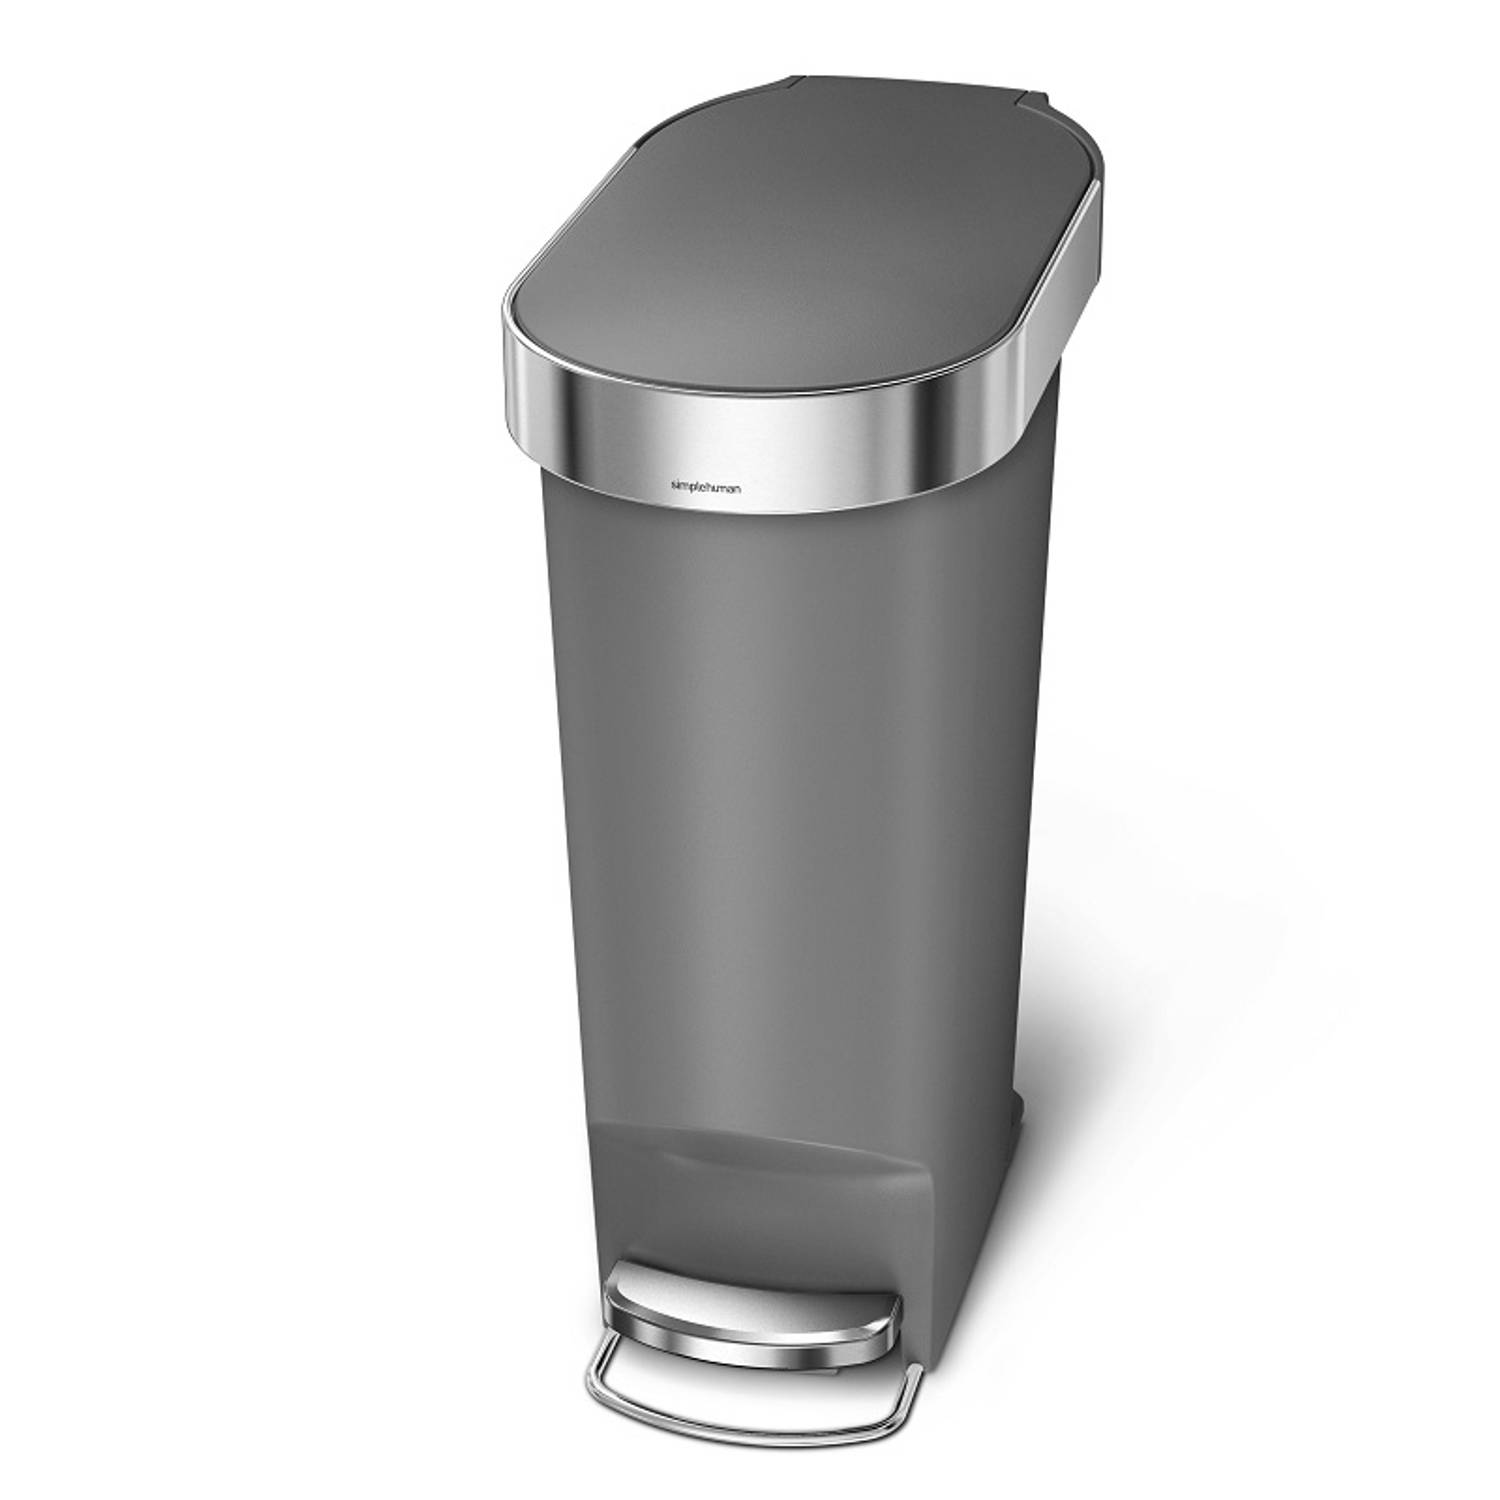 Spreek uit Klein gangpad Afvalemmer Slim - 40 liter - Grijs - Simplehuman | Blokker